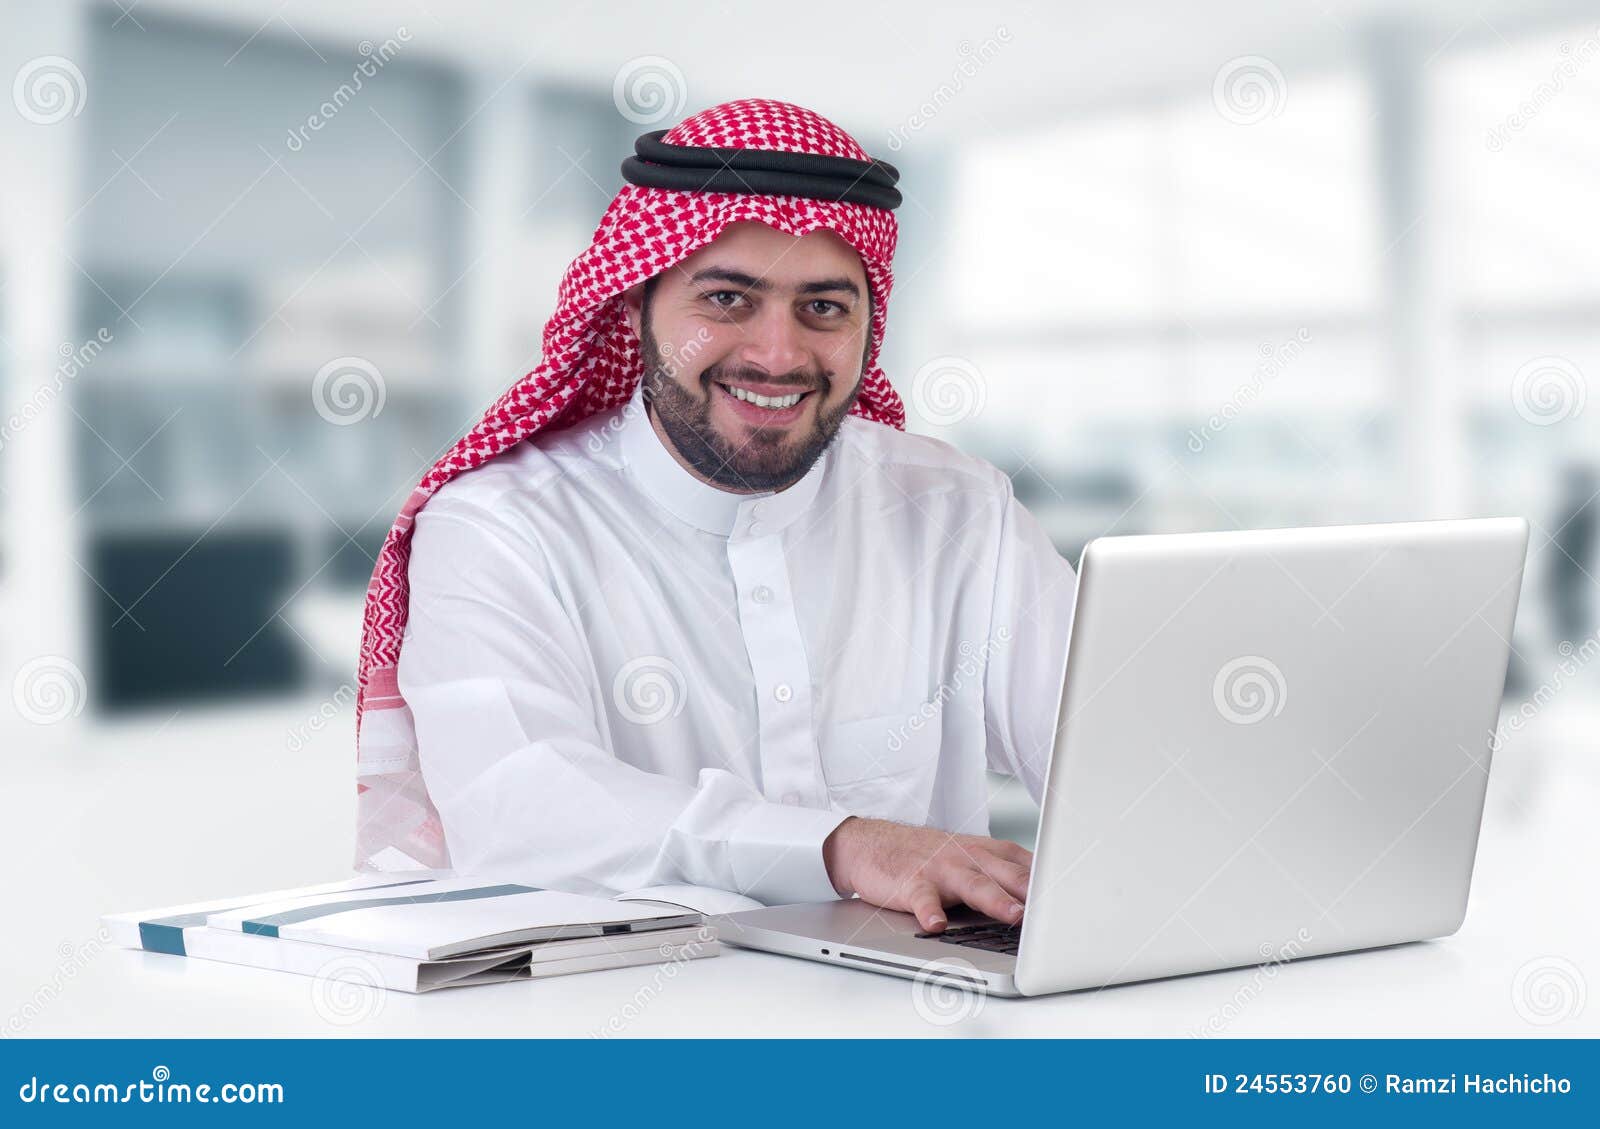 arabian businessman using laptop in office